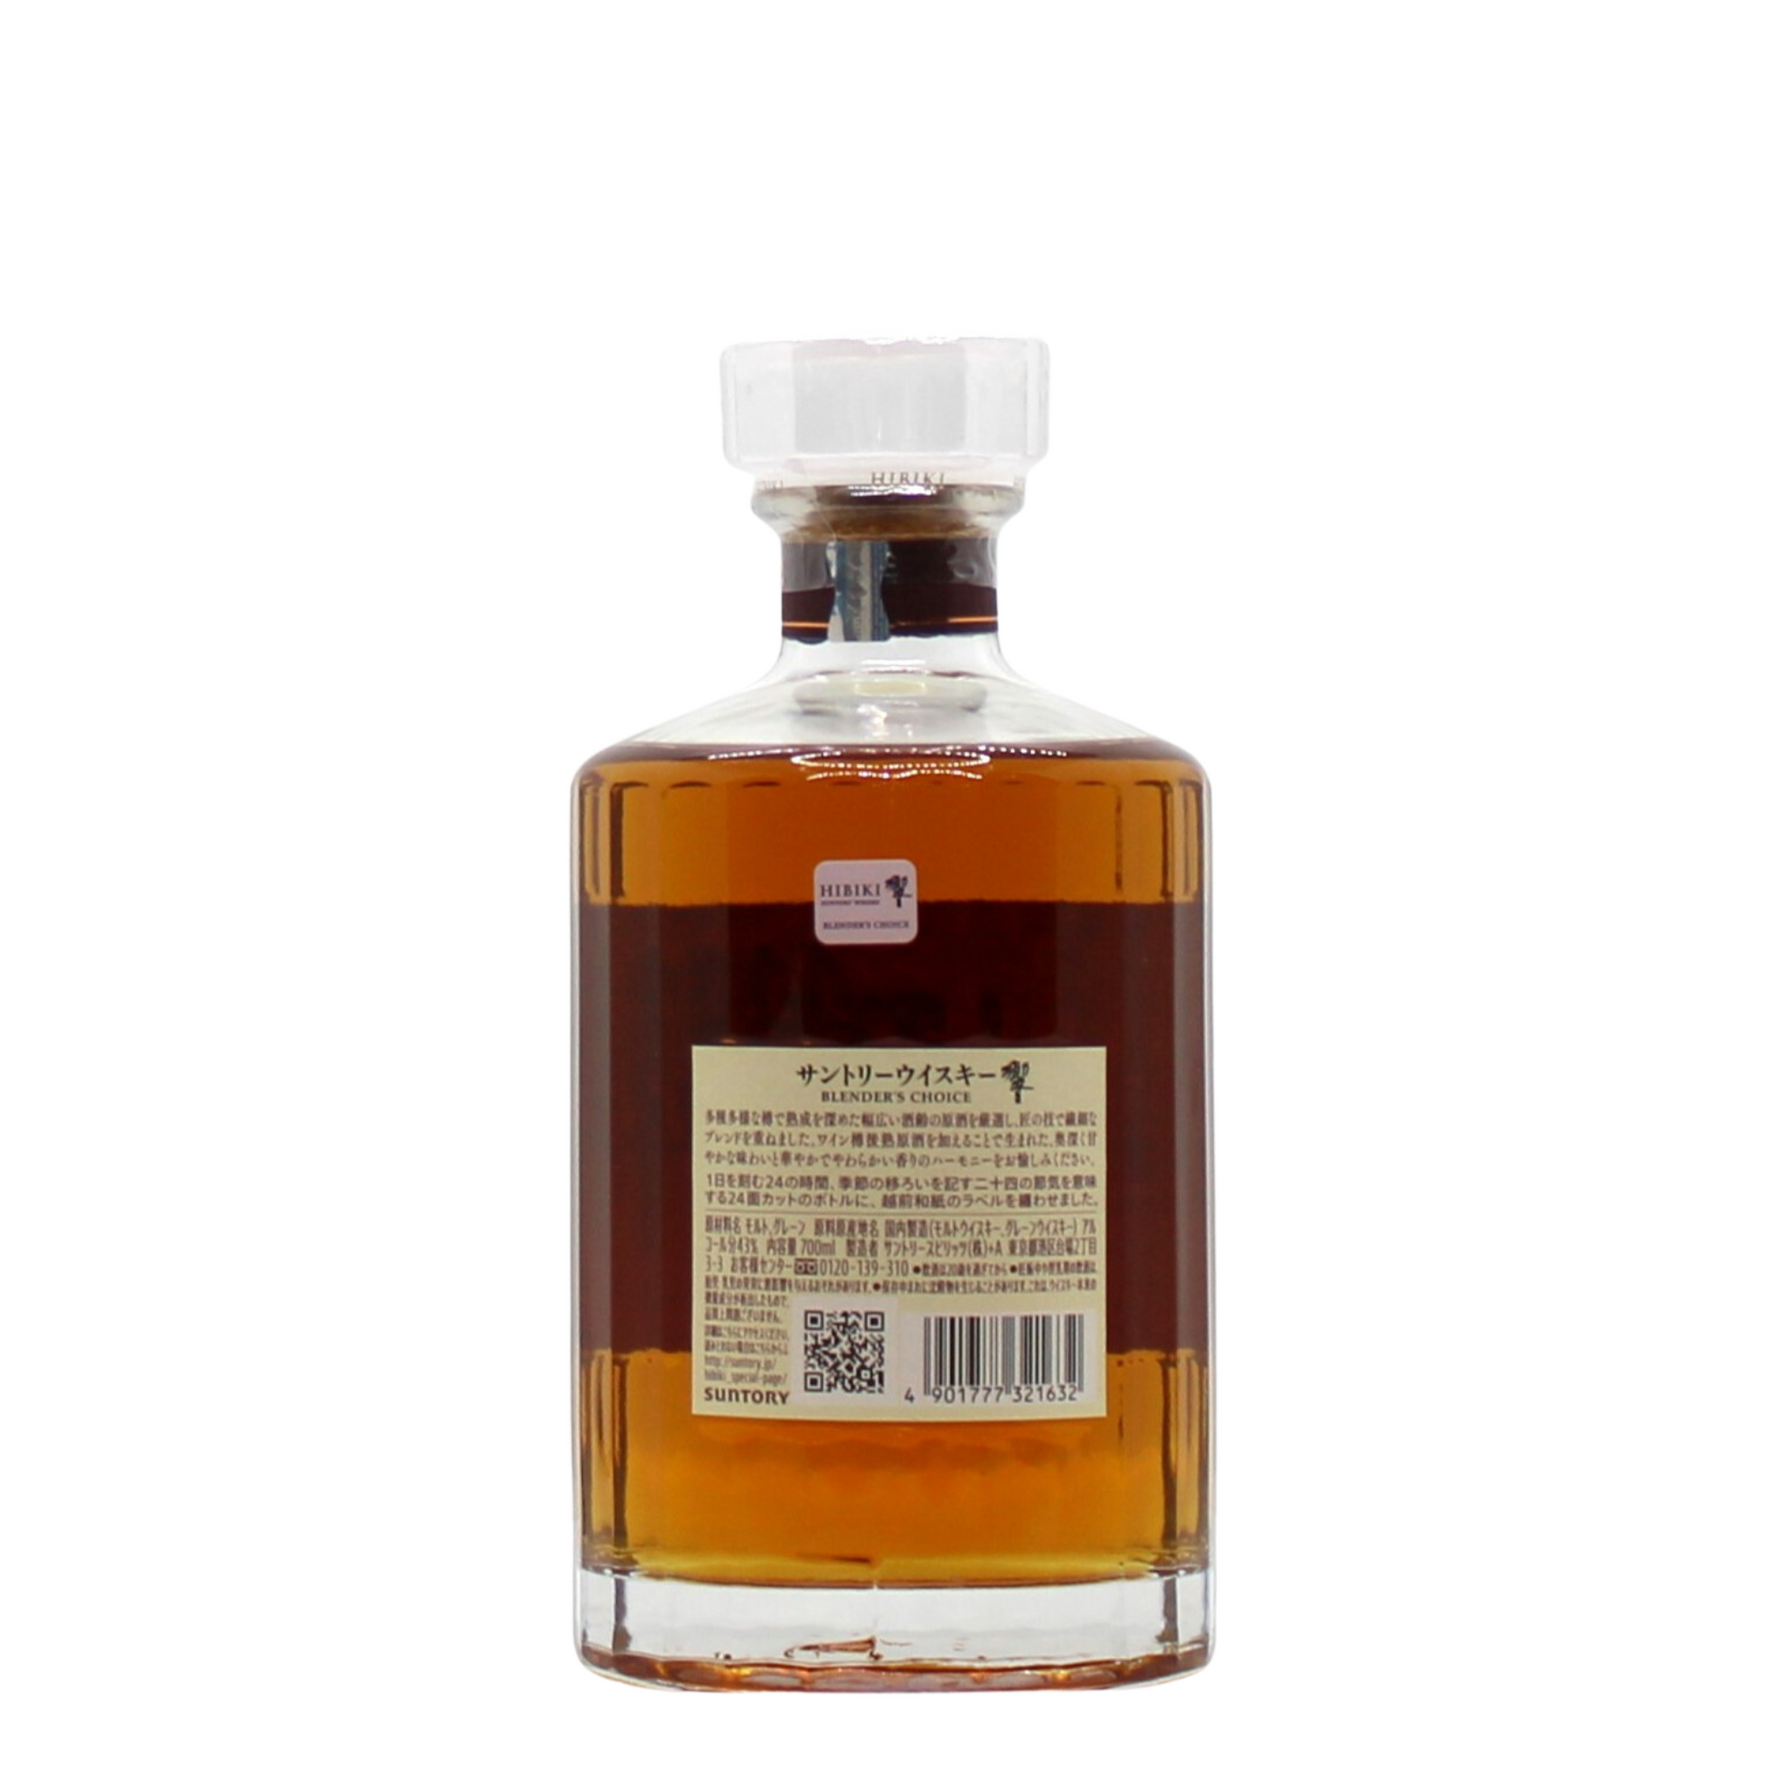 Hibiki Blender's Choice Japanese Blended Whisky – Mizunara: The